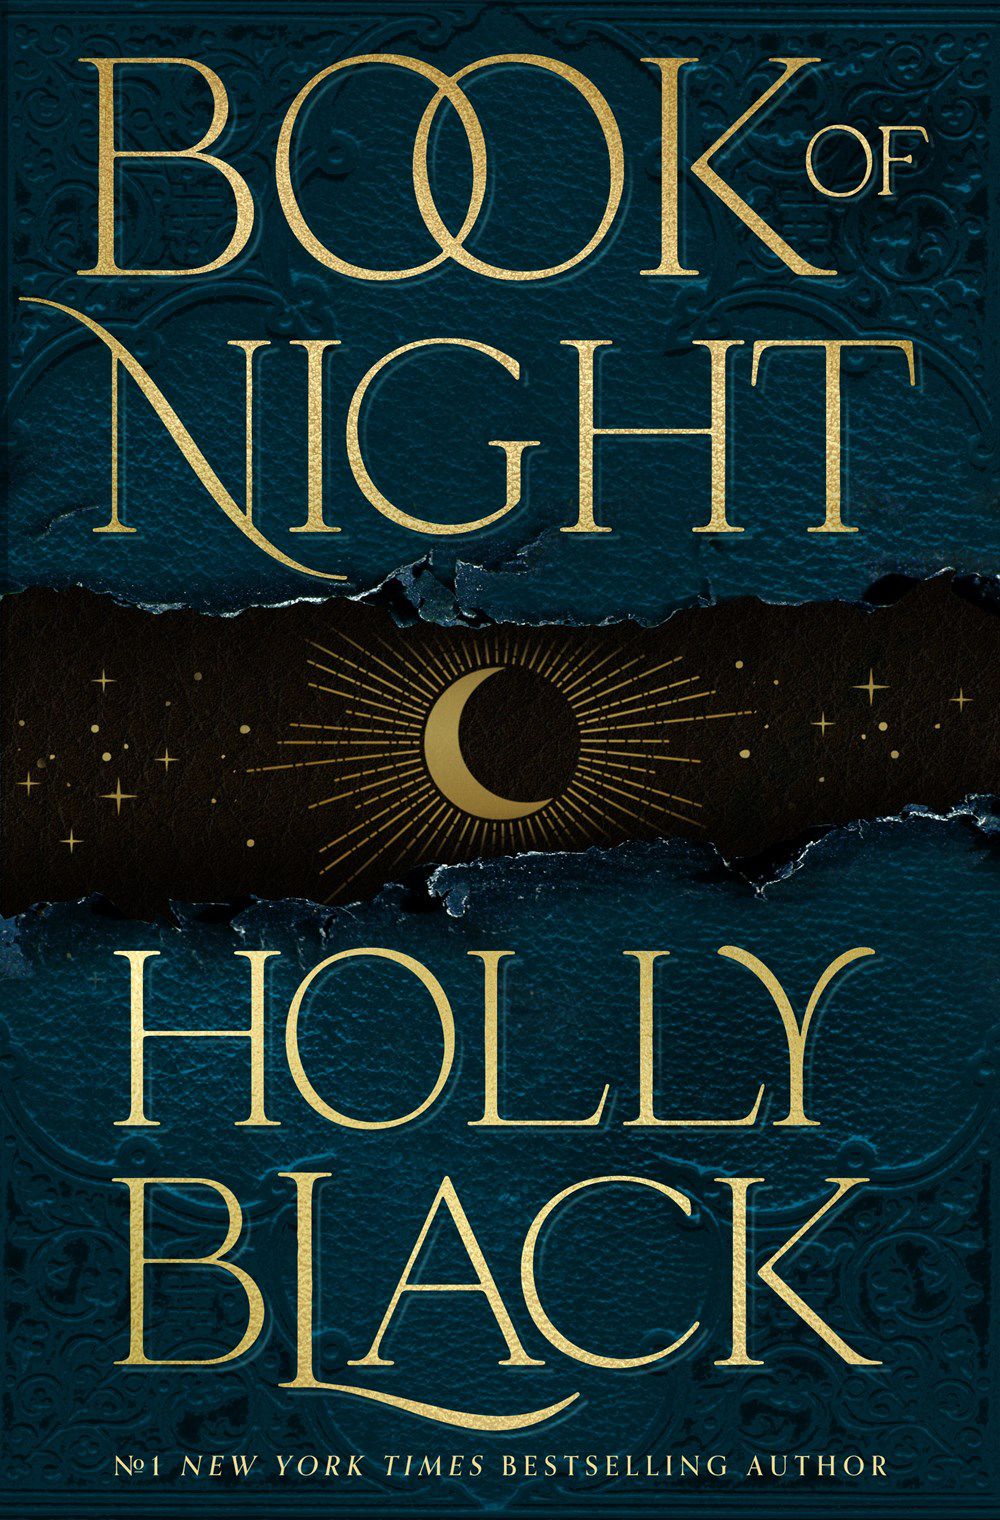 جلد کتاب شب از هالی بلک، با یک نیمه ماه در پس زمینه سیاه و آبی.